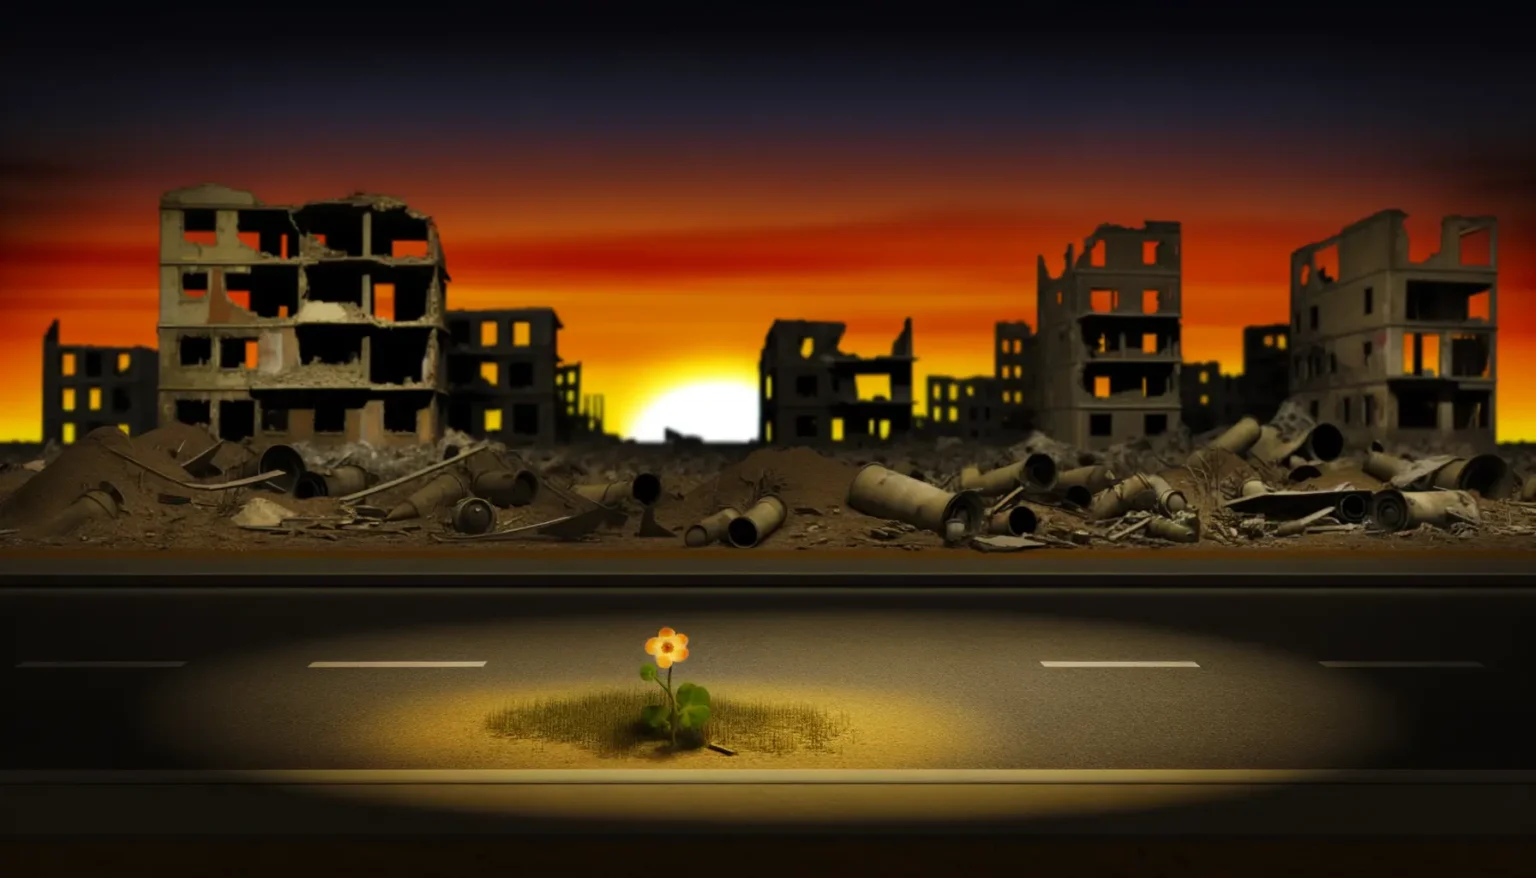 Einzelne Blume wächst inmitten einer verlassenen Straße vor einer Kulisse zerstörter Gebäude mit einem dramatischen Sonnenuntergang im Hintergrund.